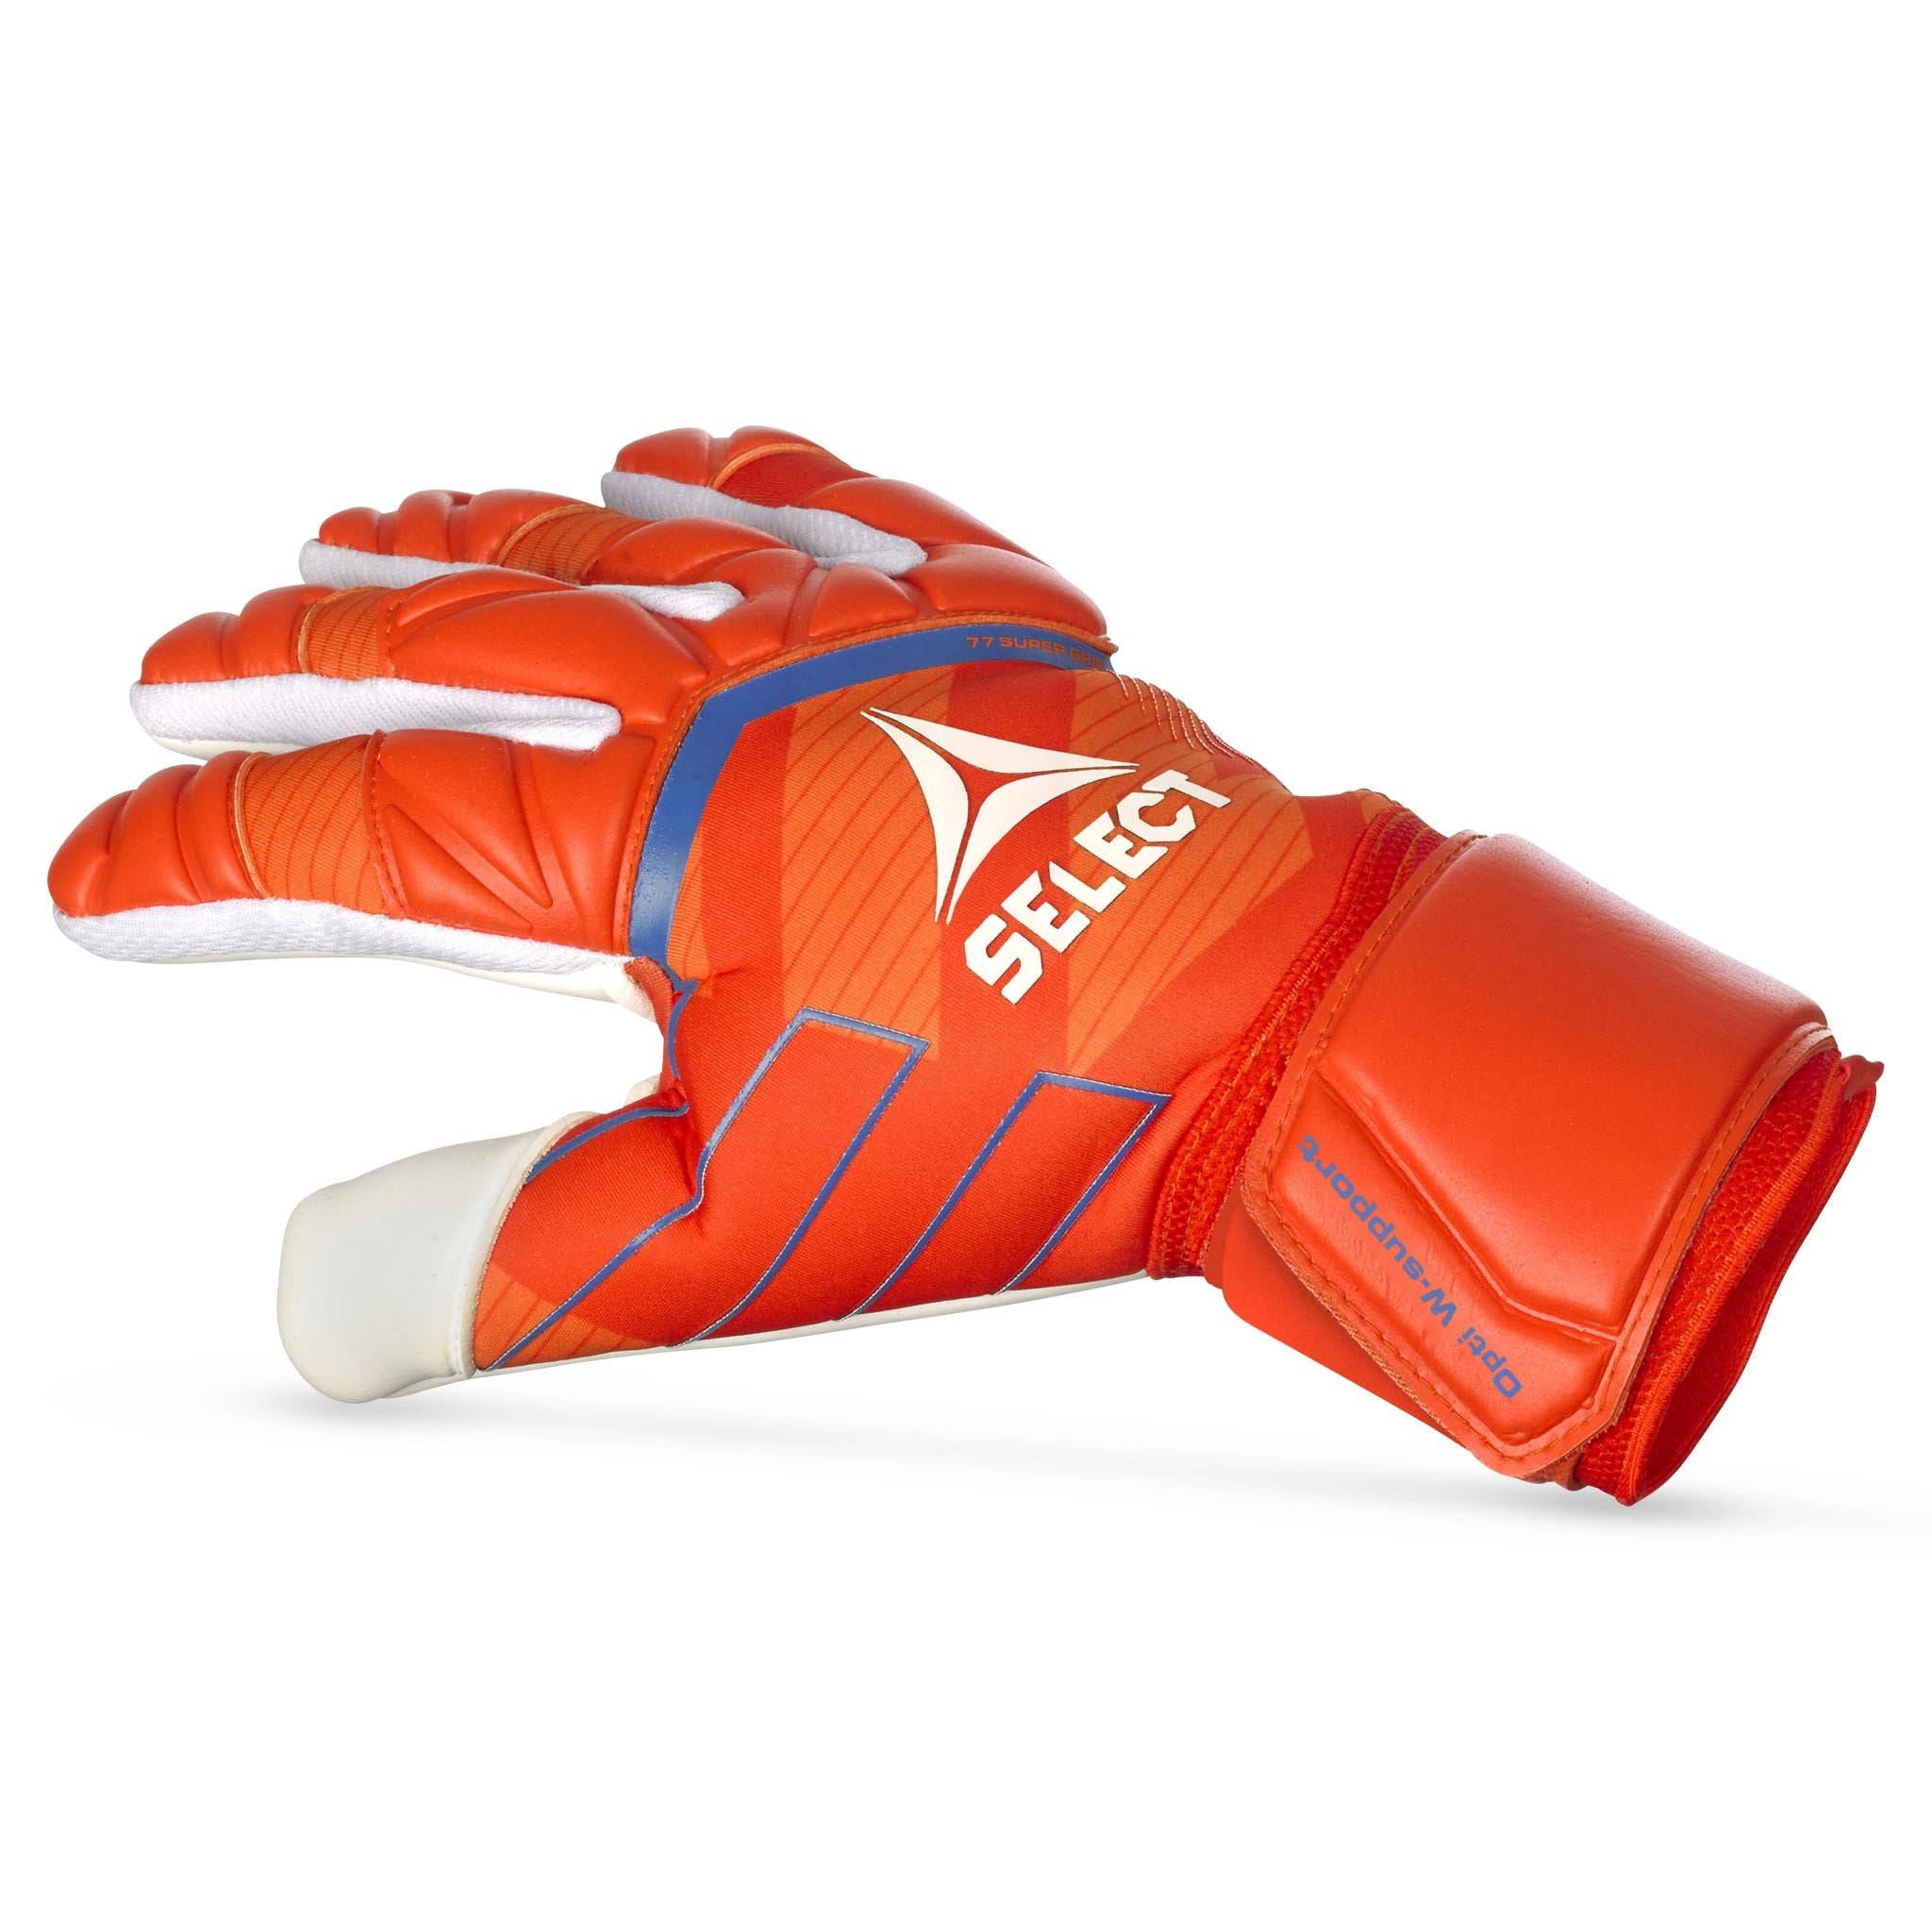 Goalkeeper gloves - 77 Super Grip #colour_orange/white